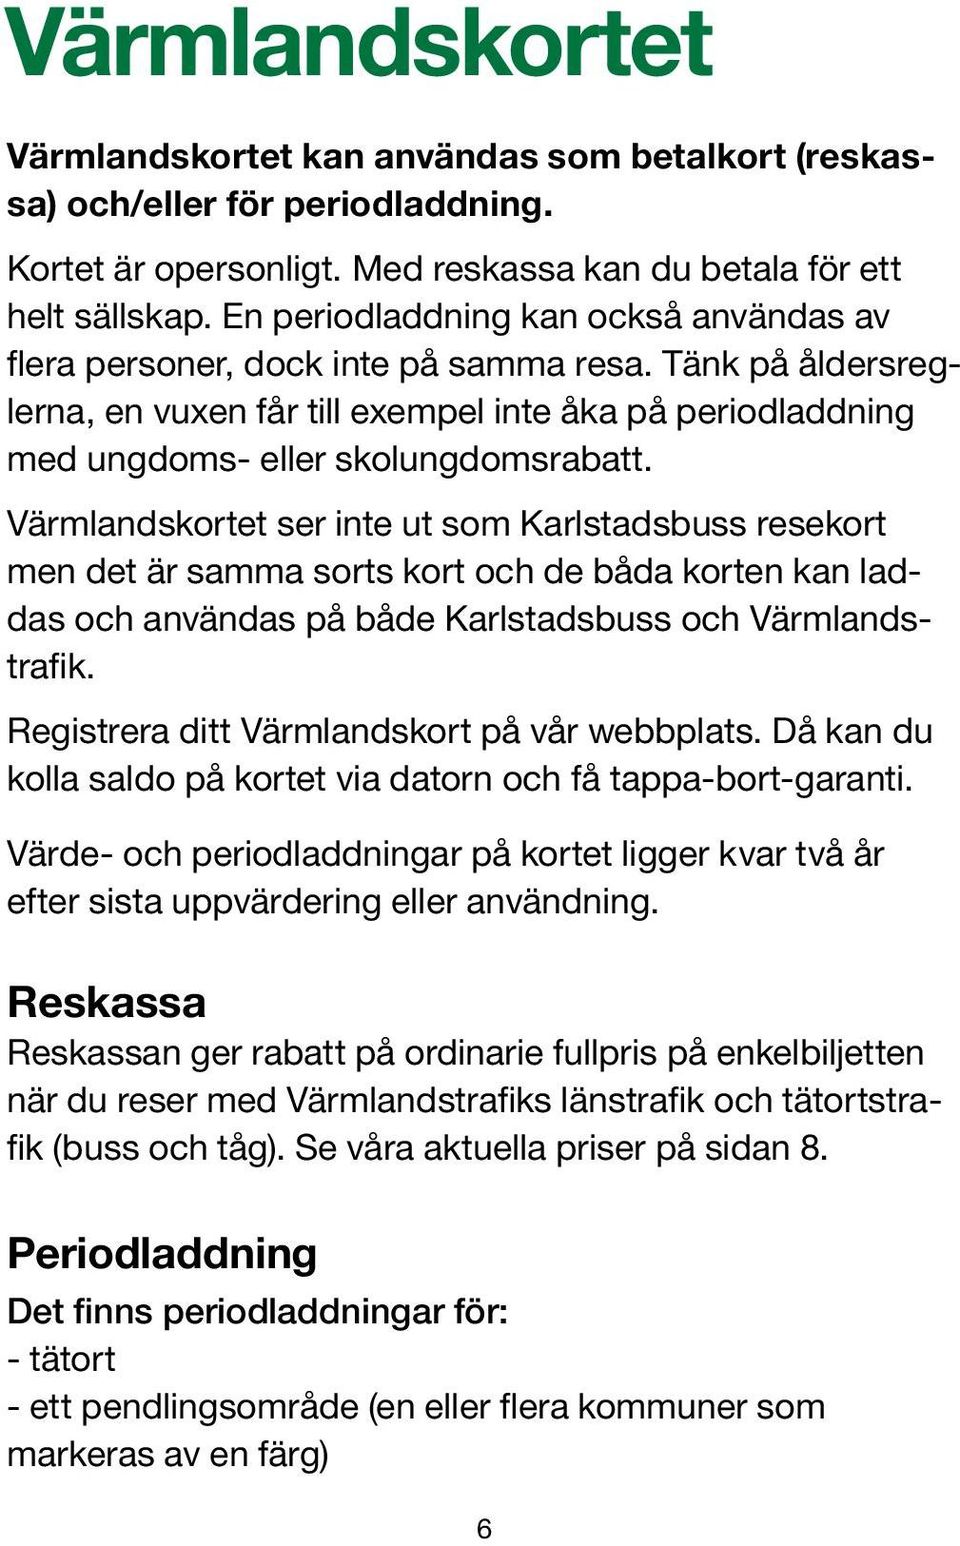 Värmlandskortet ser inte ut som Karlstadsbuss resekort men det är samma sorts kort och de båda korten kan laddas och användas på både Karlstadsbuss och Värmlandstrafik.